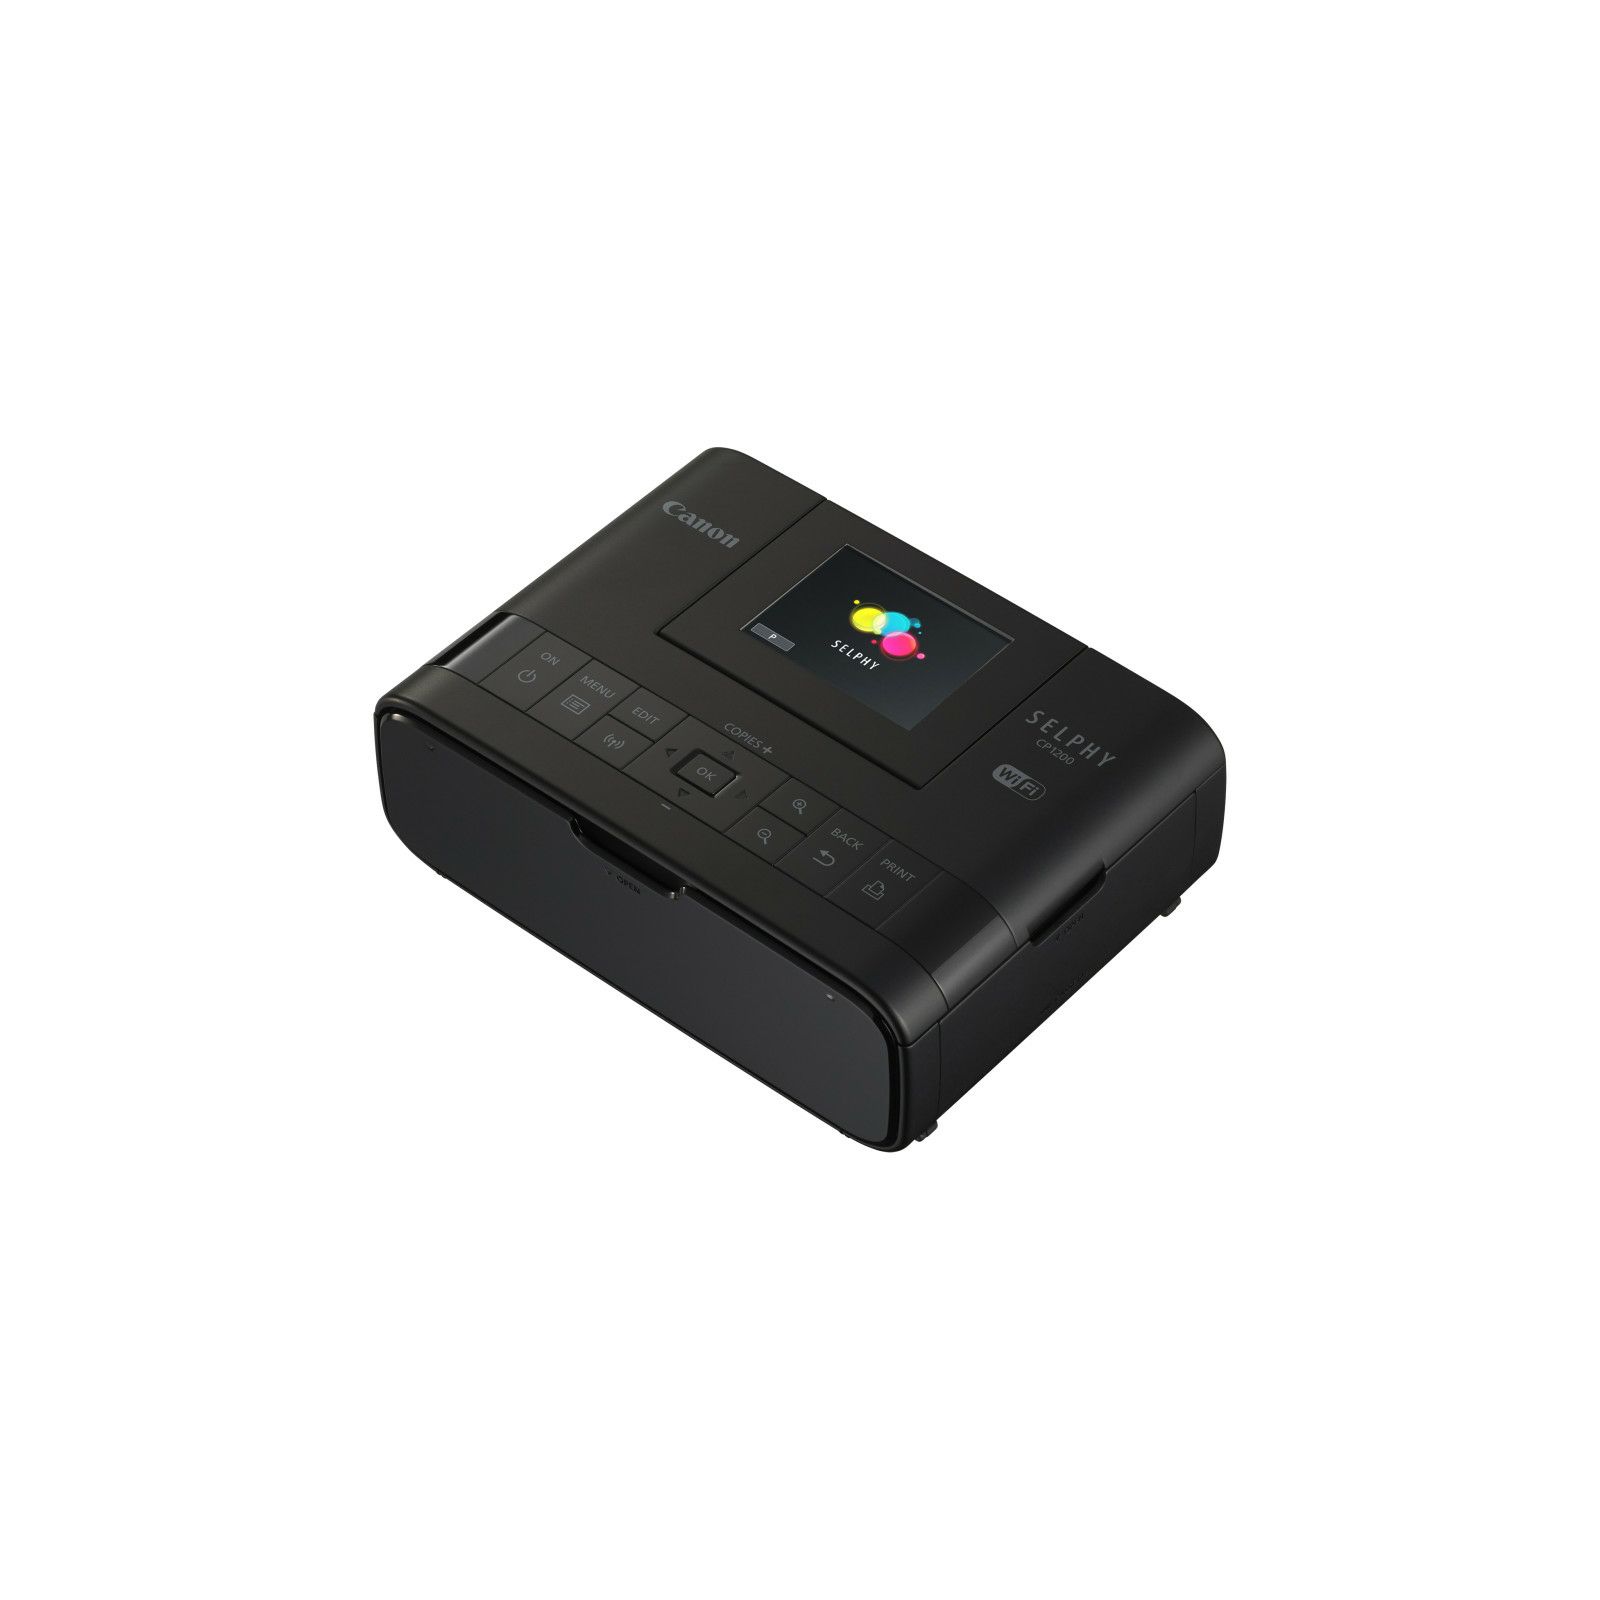 Canon Selphy CP1200 KIT Black crni termalni sublimacijski printer Wireless Compact Photo termosublimacijski pisač (0599C013AA)